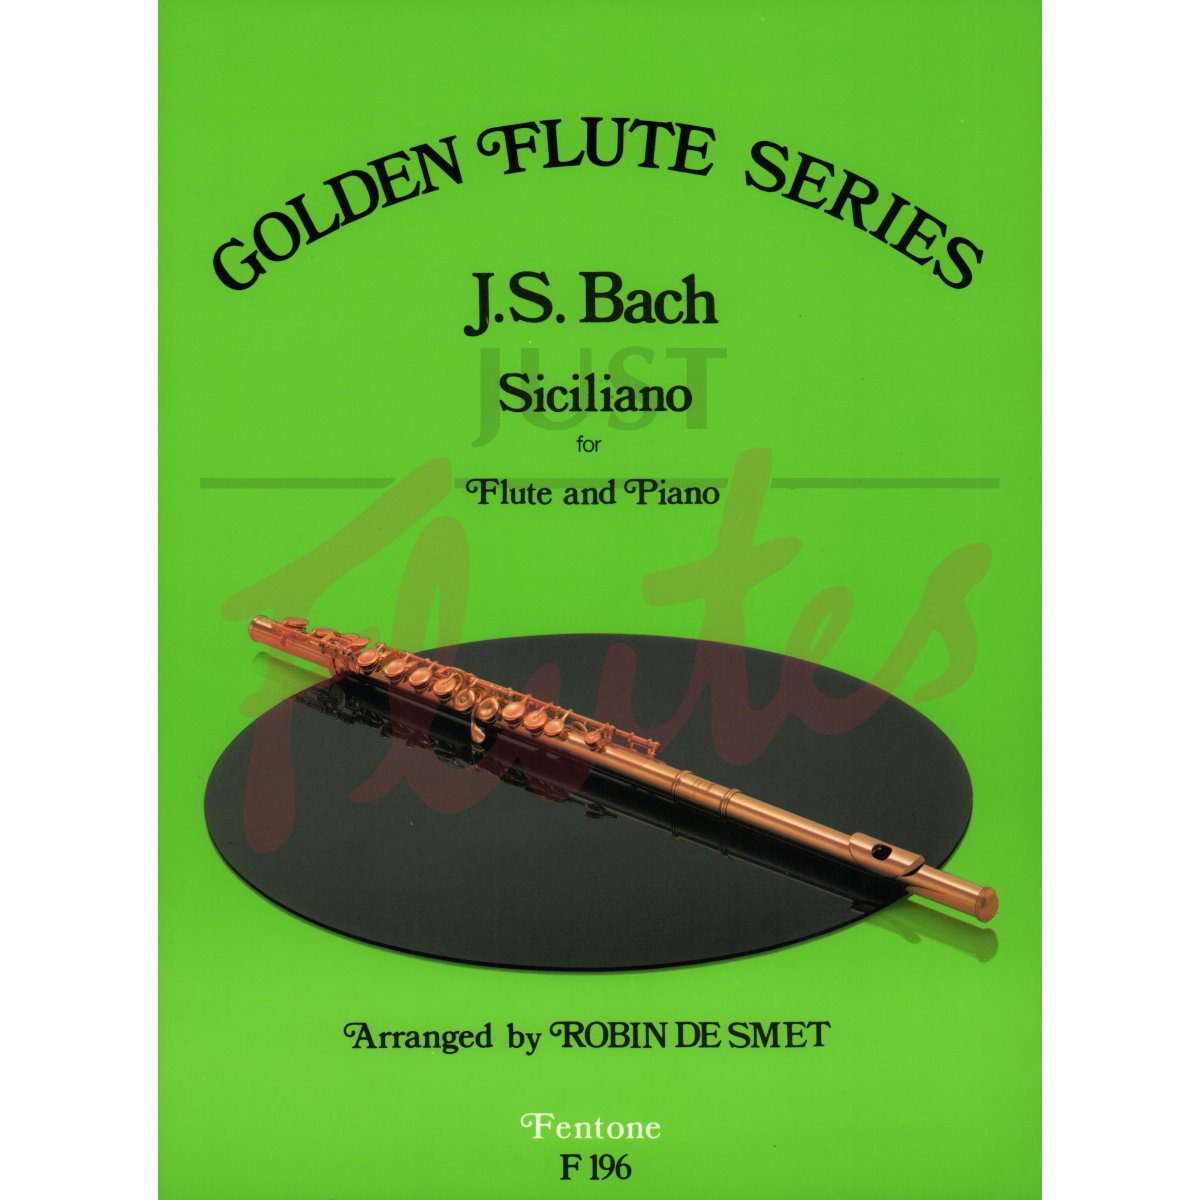 Siciliano from Sonata No. 2 in Eb major for Flute and Piano